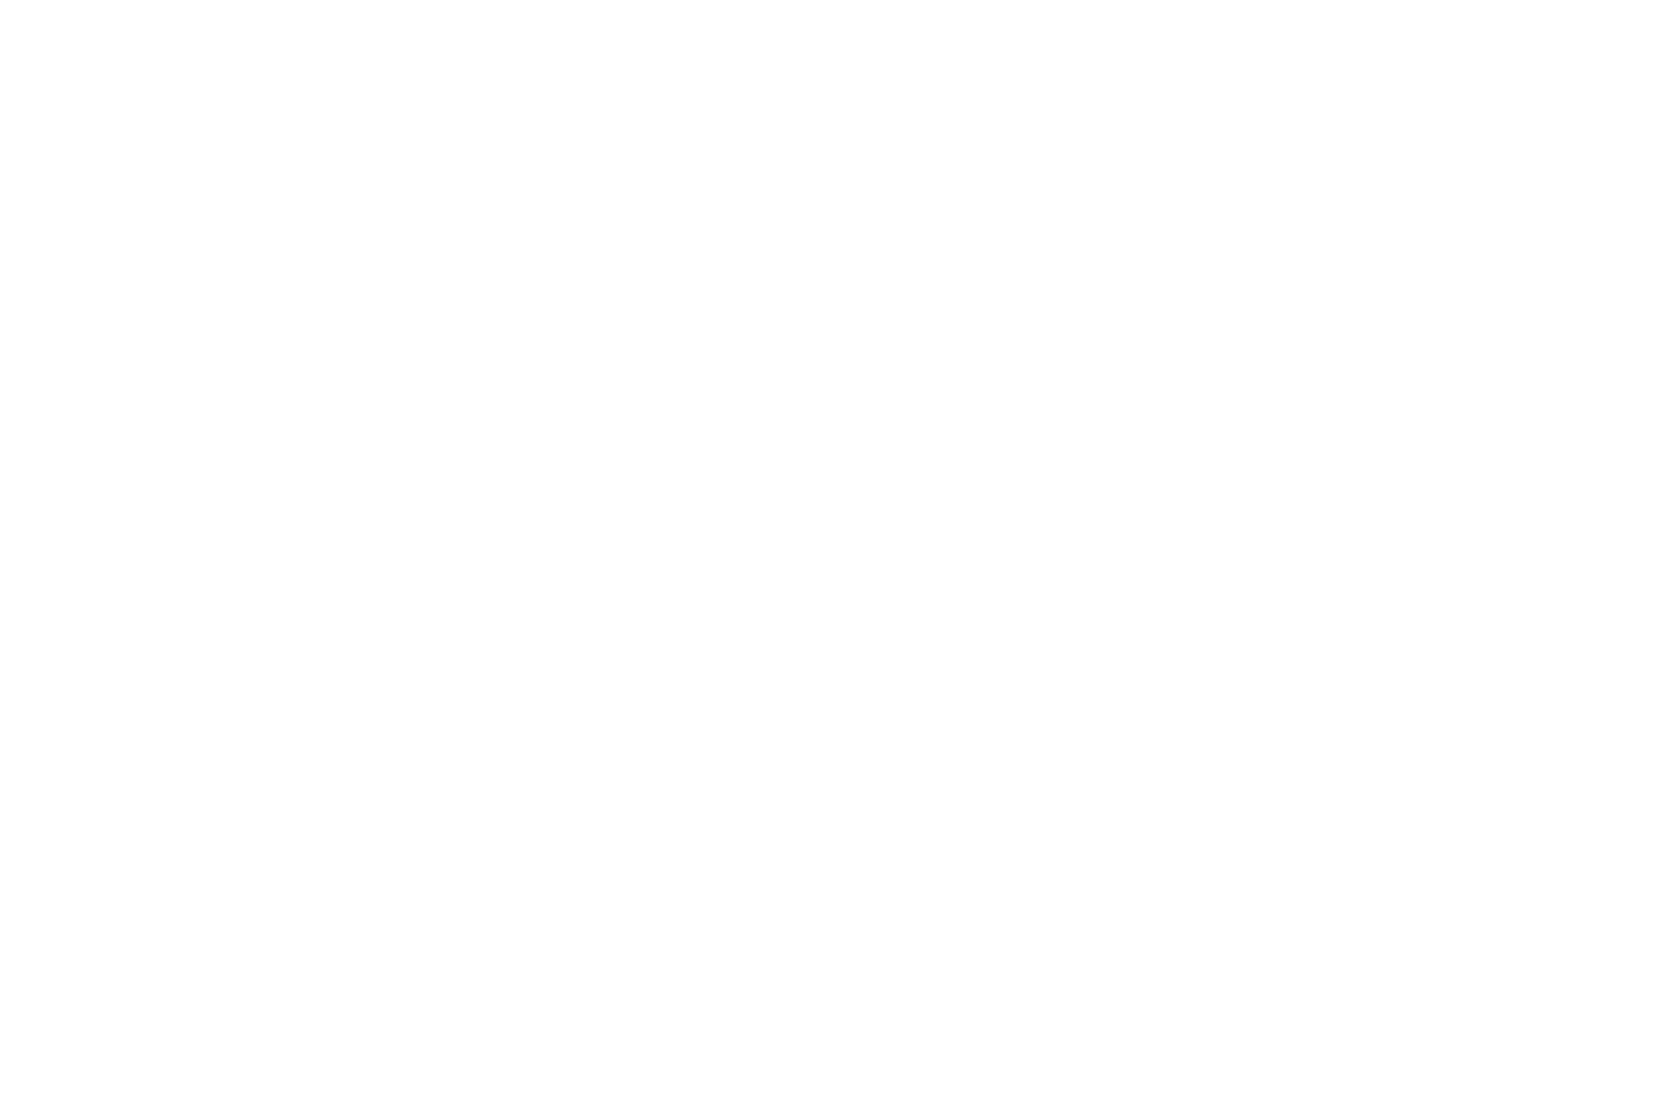 Логотип для завода железобетонных изделий. Имитация текстуры сложной стены для подачи логотипа ЖБИ-5